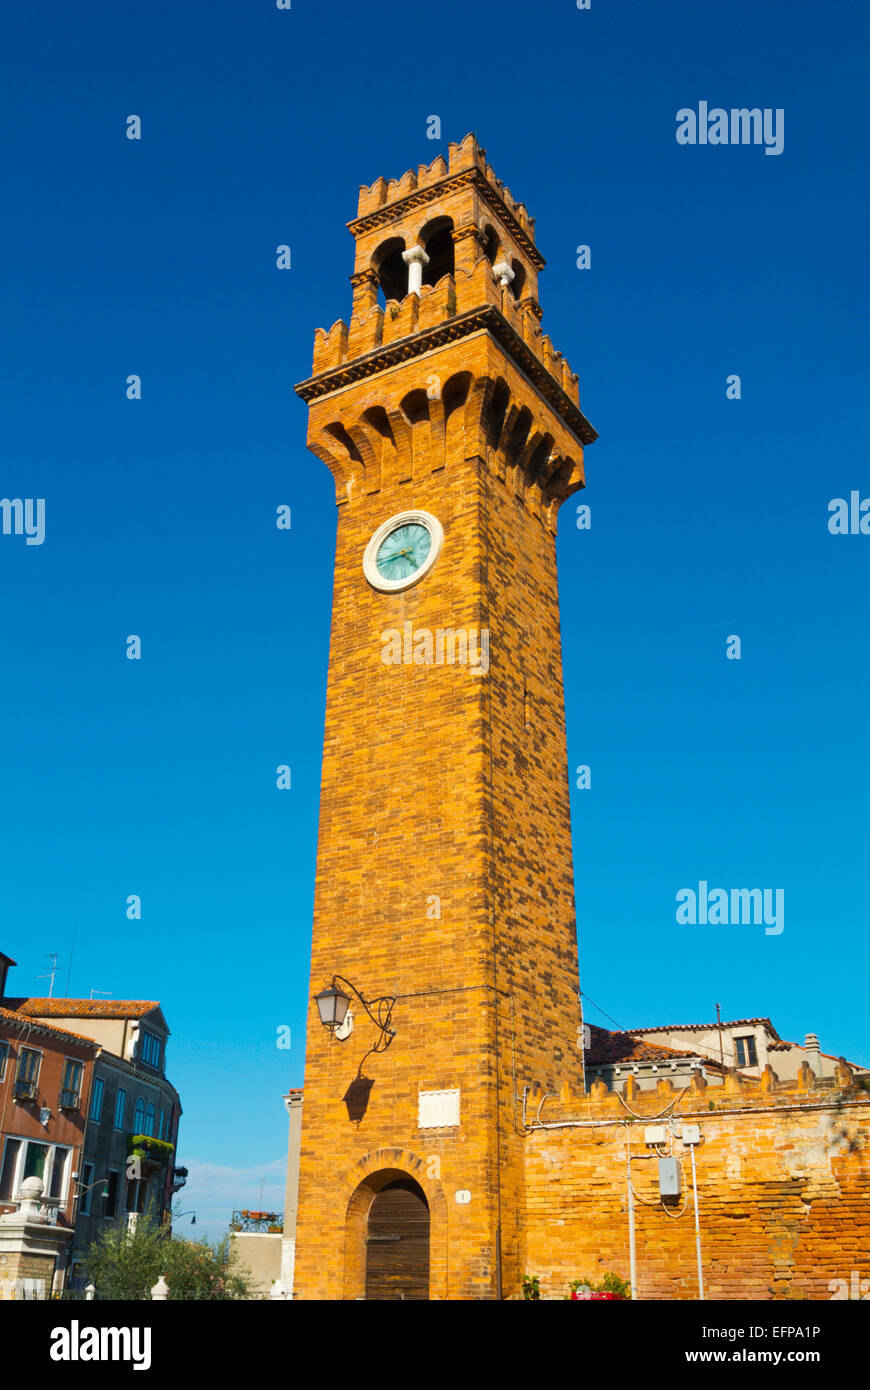 Campo Santo Stefano, with clock tower (1890), Murano island, Venice, Italy Stock Photo